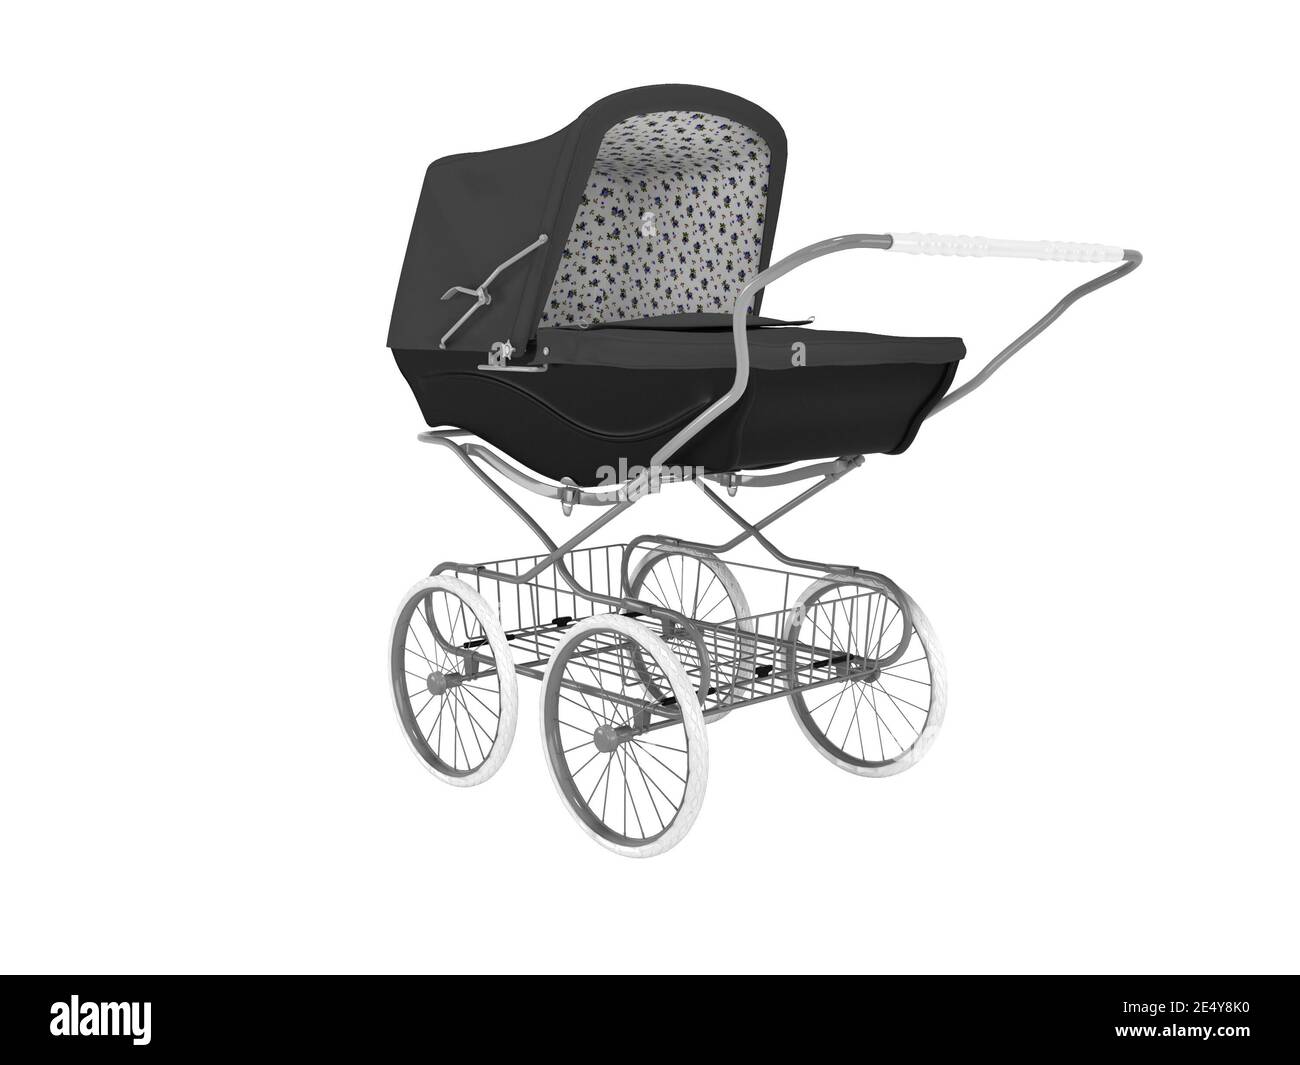 3D Rendering schwarz Metall Kinderwagen mit Gepäckträger auf weiß  Hintergrund kein Schatten Stockfotografie - Alamy